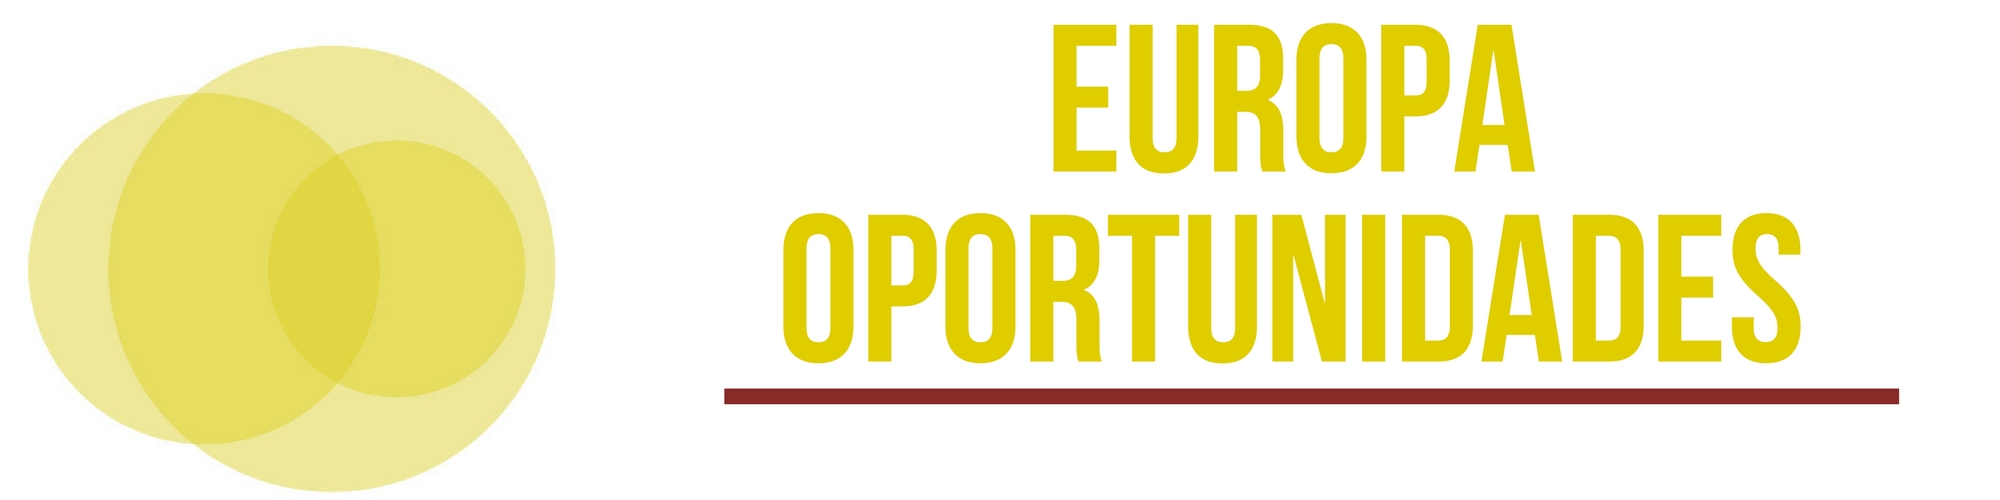 Banner Europa Oportunidades